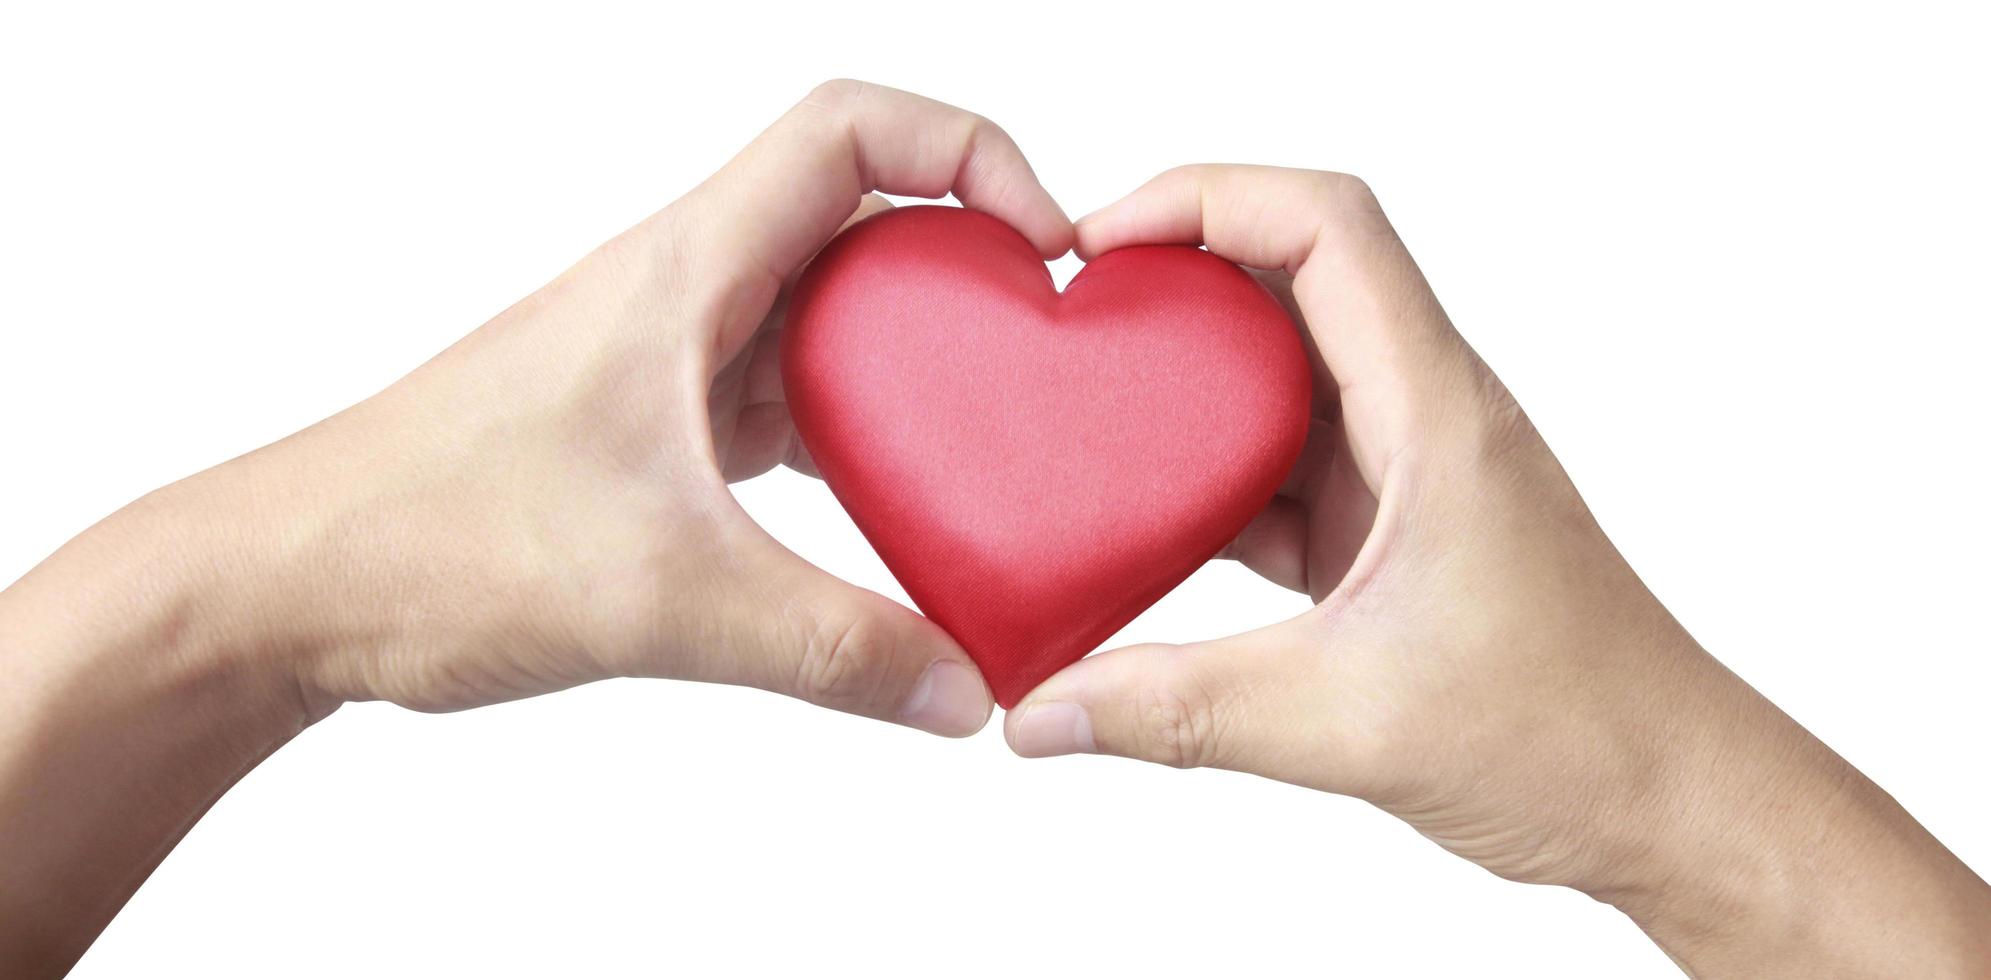 handen met rood hart. concepten voor donatie van hartgezondheid foto